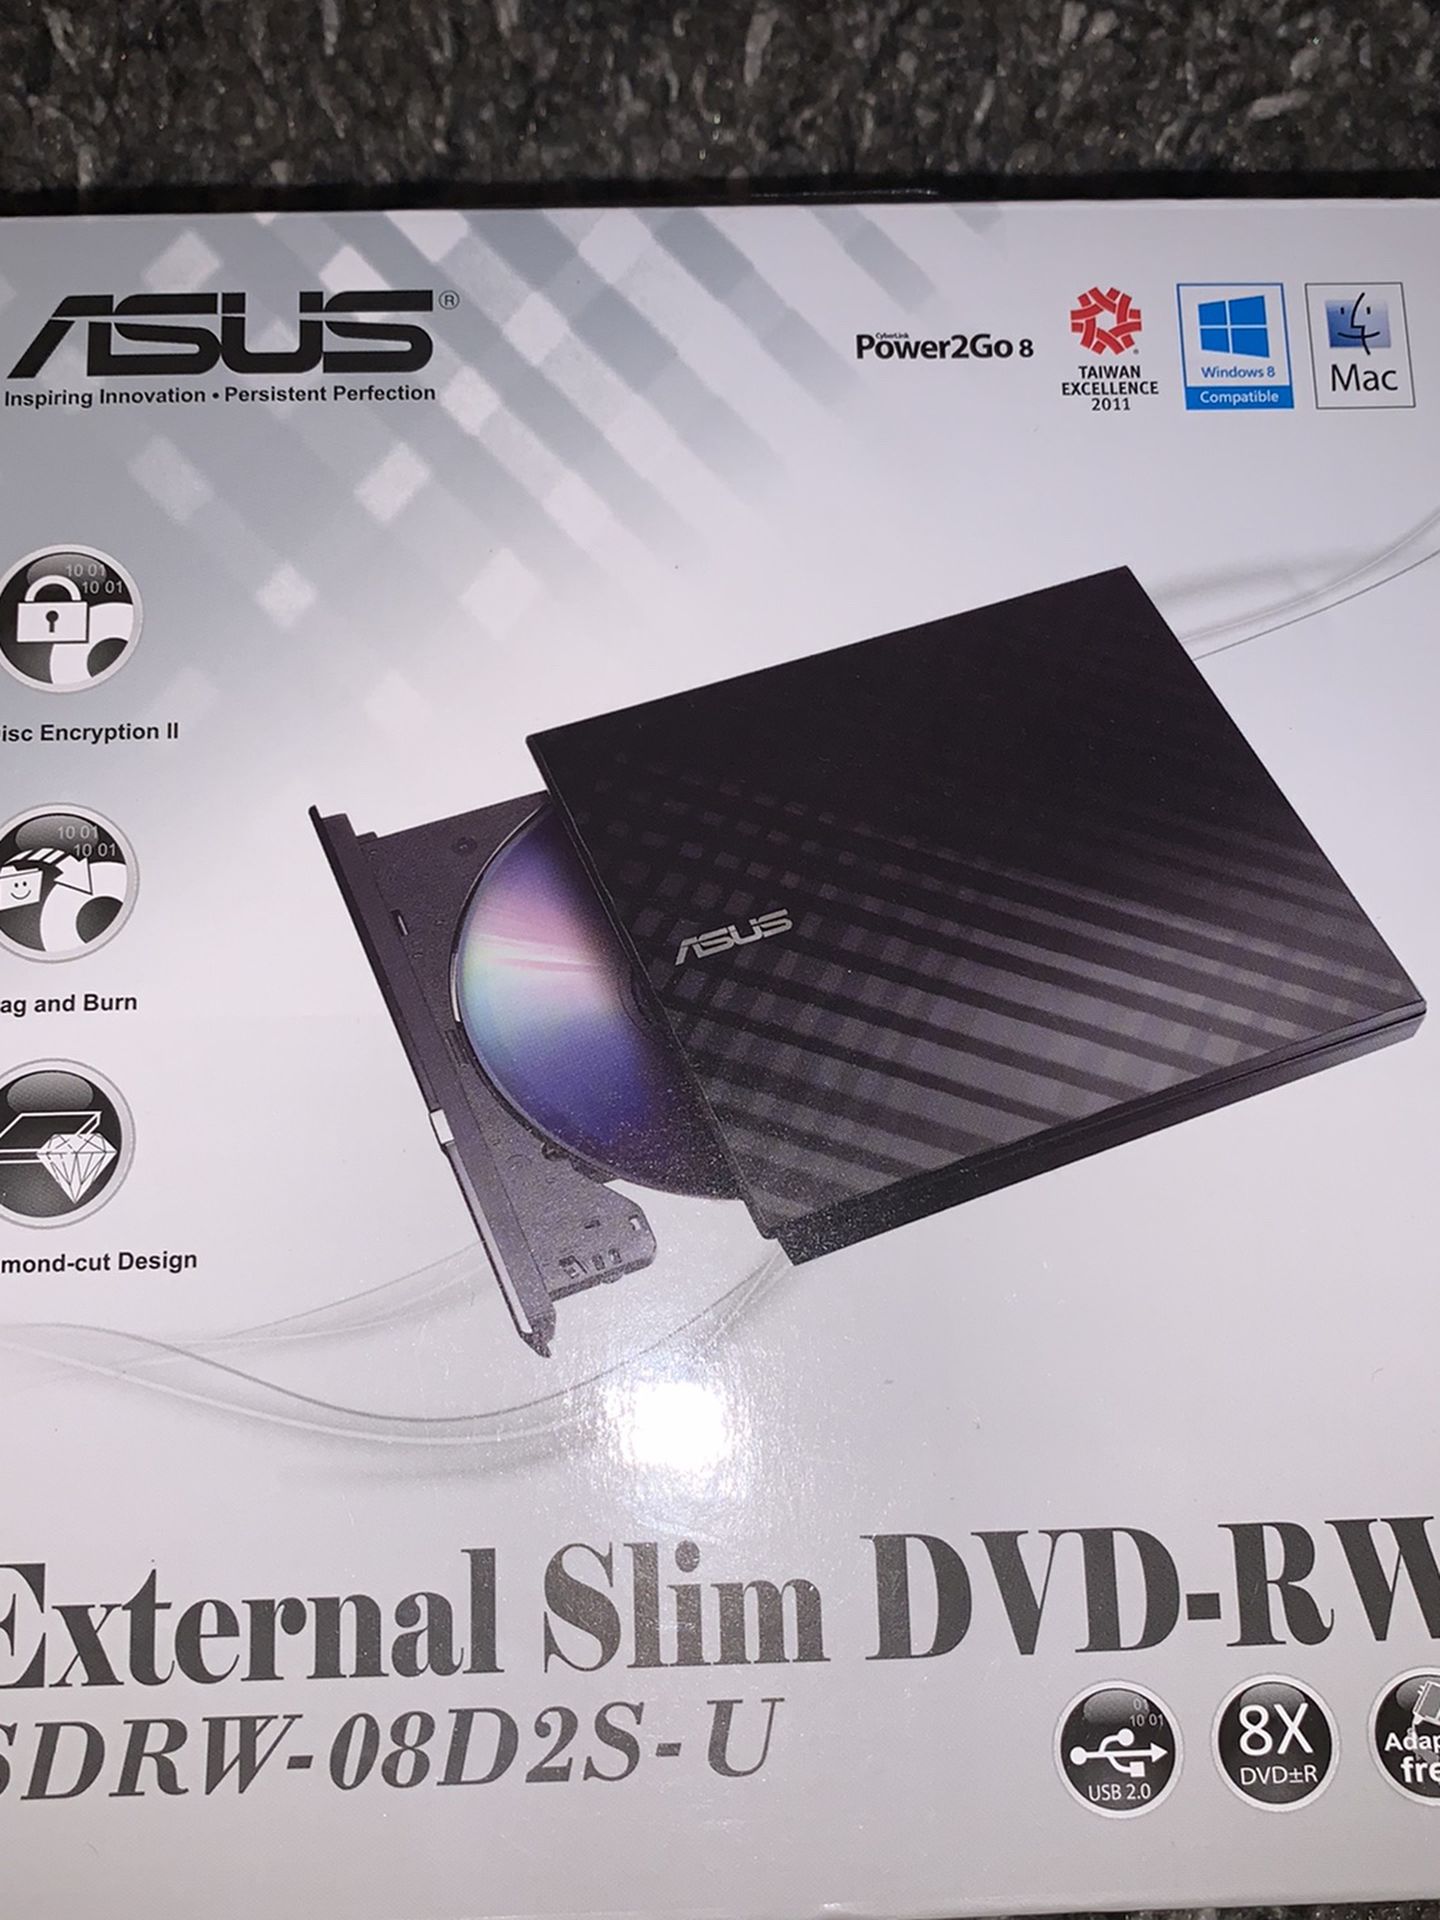 External Slim DVD Rw